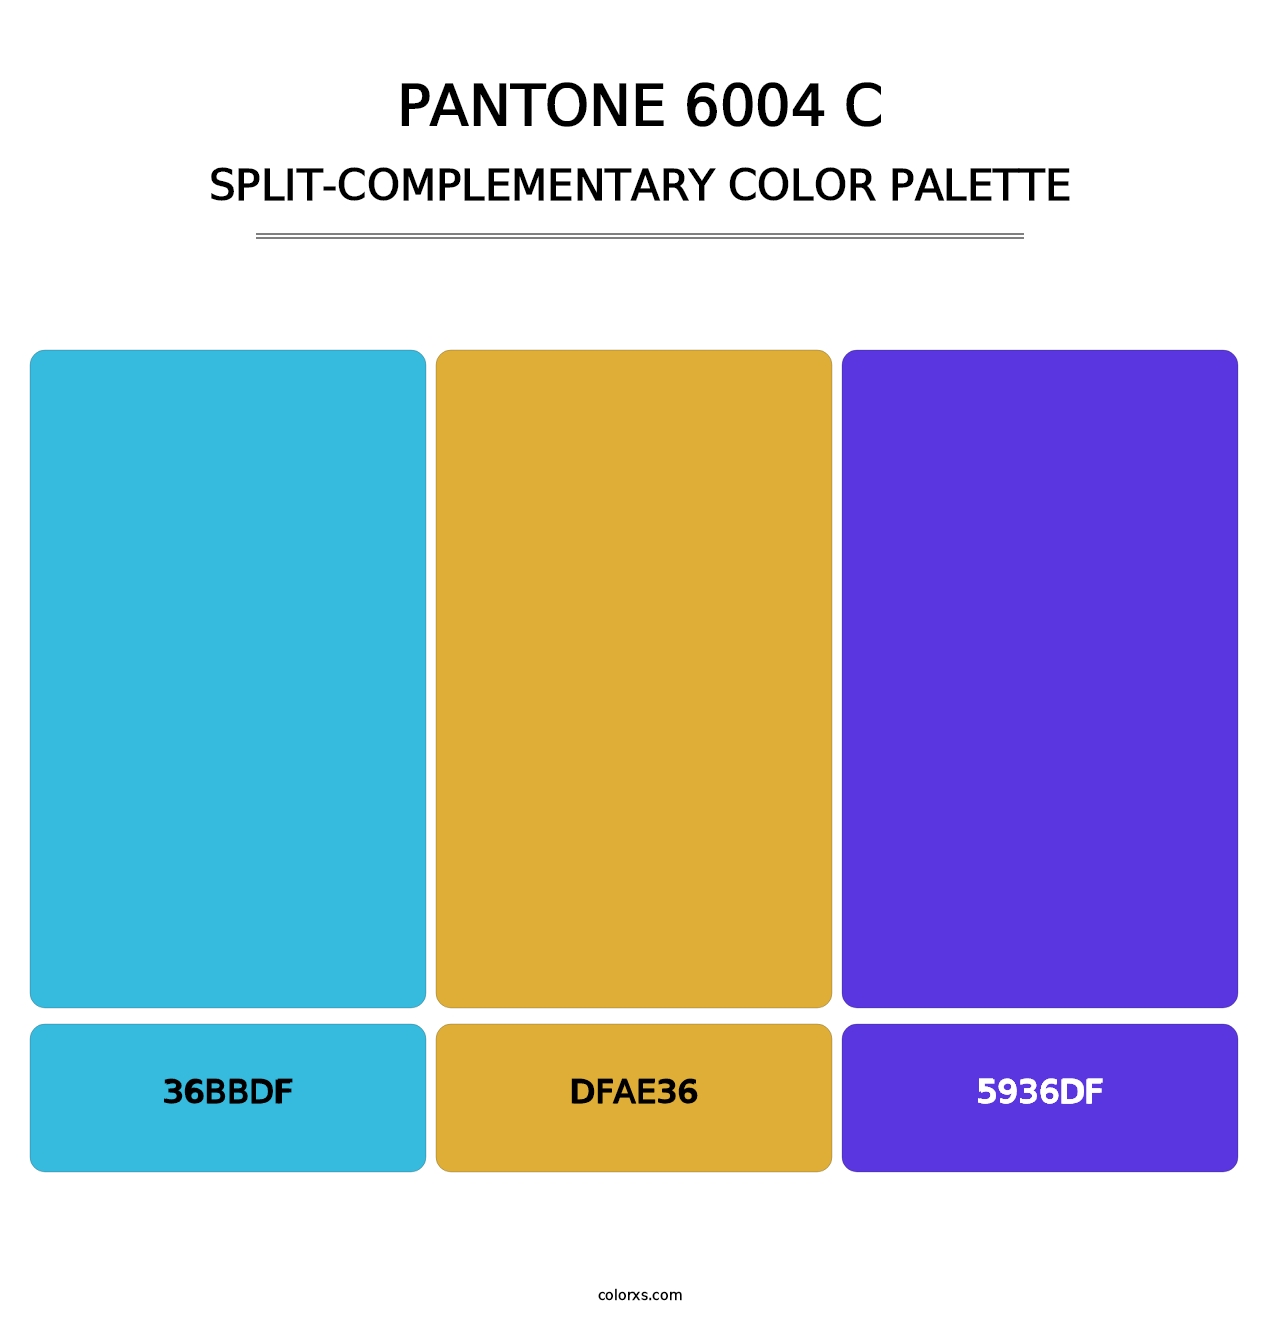 PANTONE 6004 C - Split-Complementary Color Palette